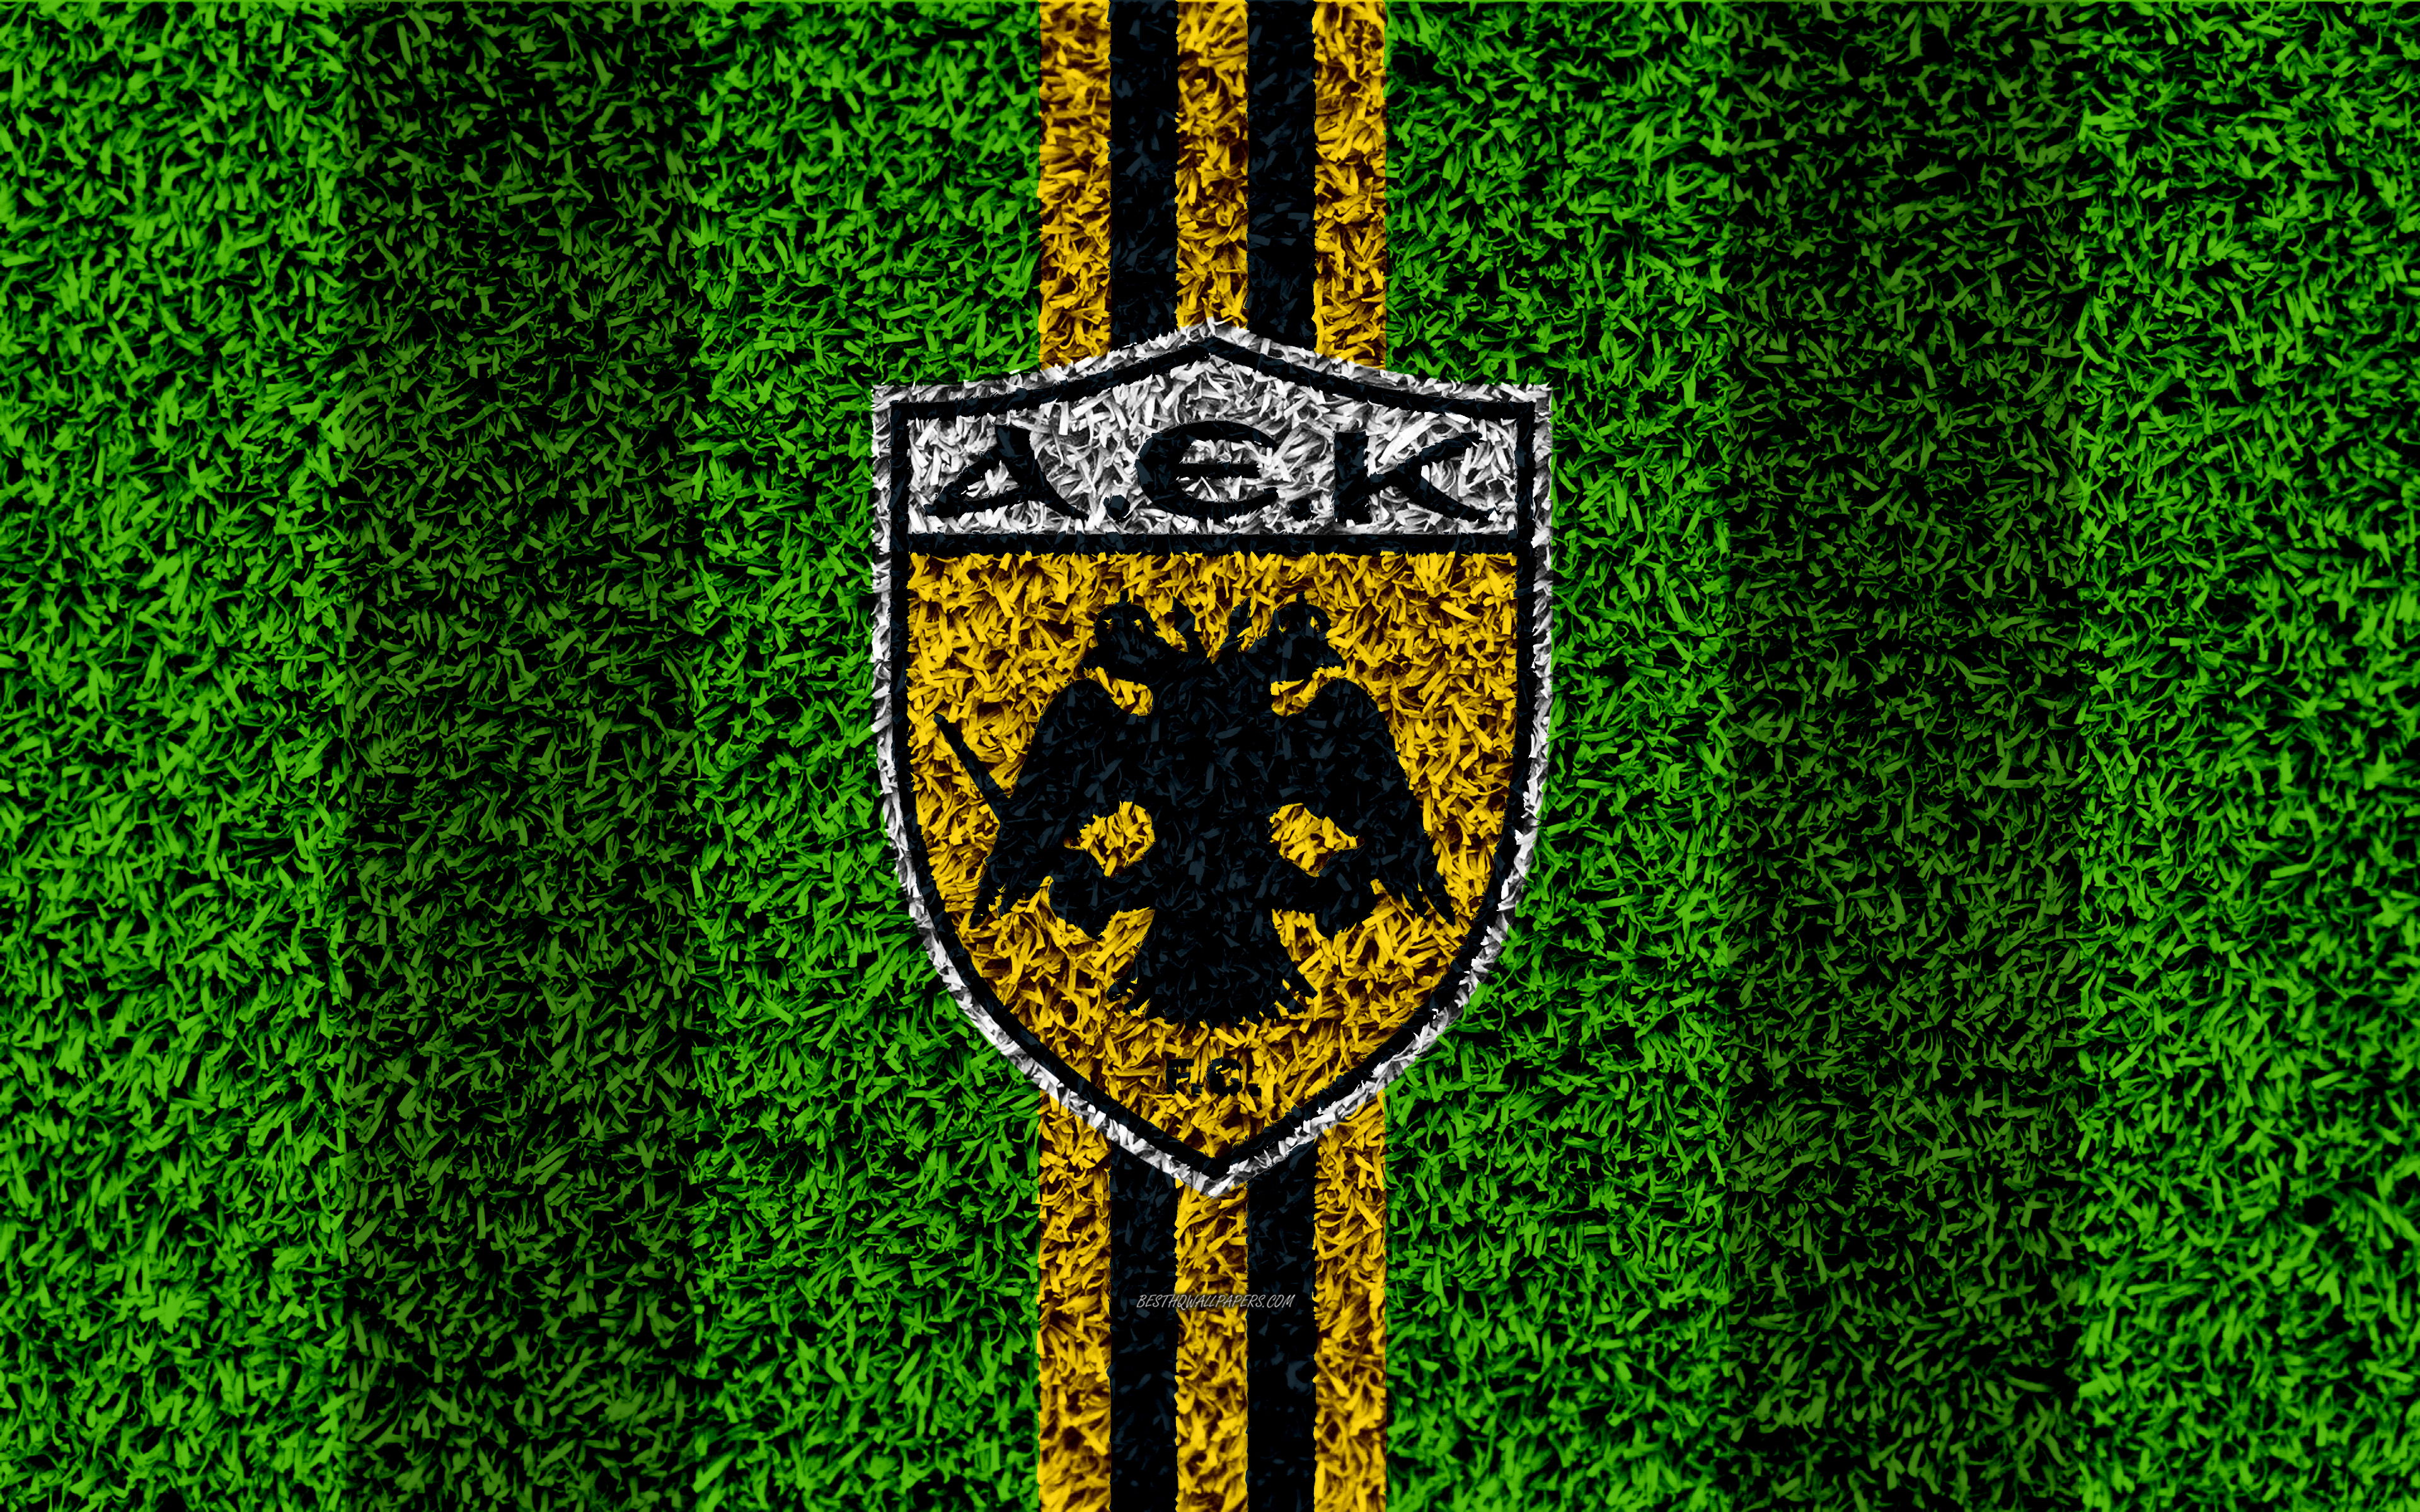 Aek Athens F C Emblem Logo Soccer 3840x2400